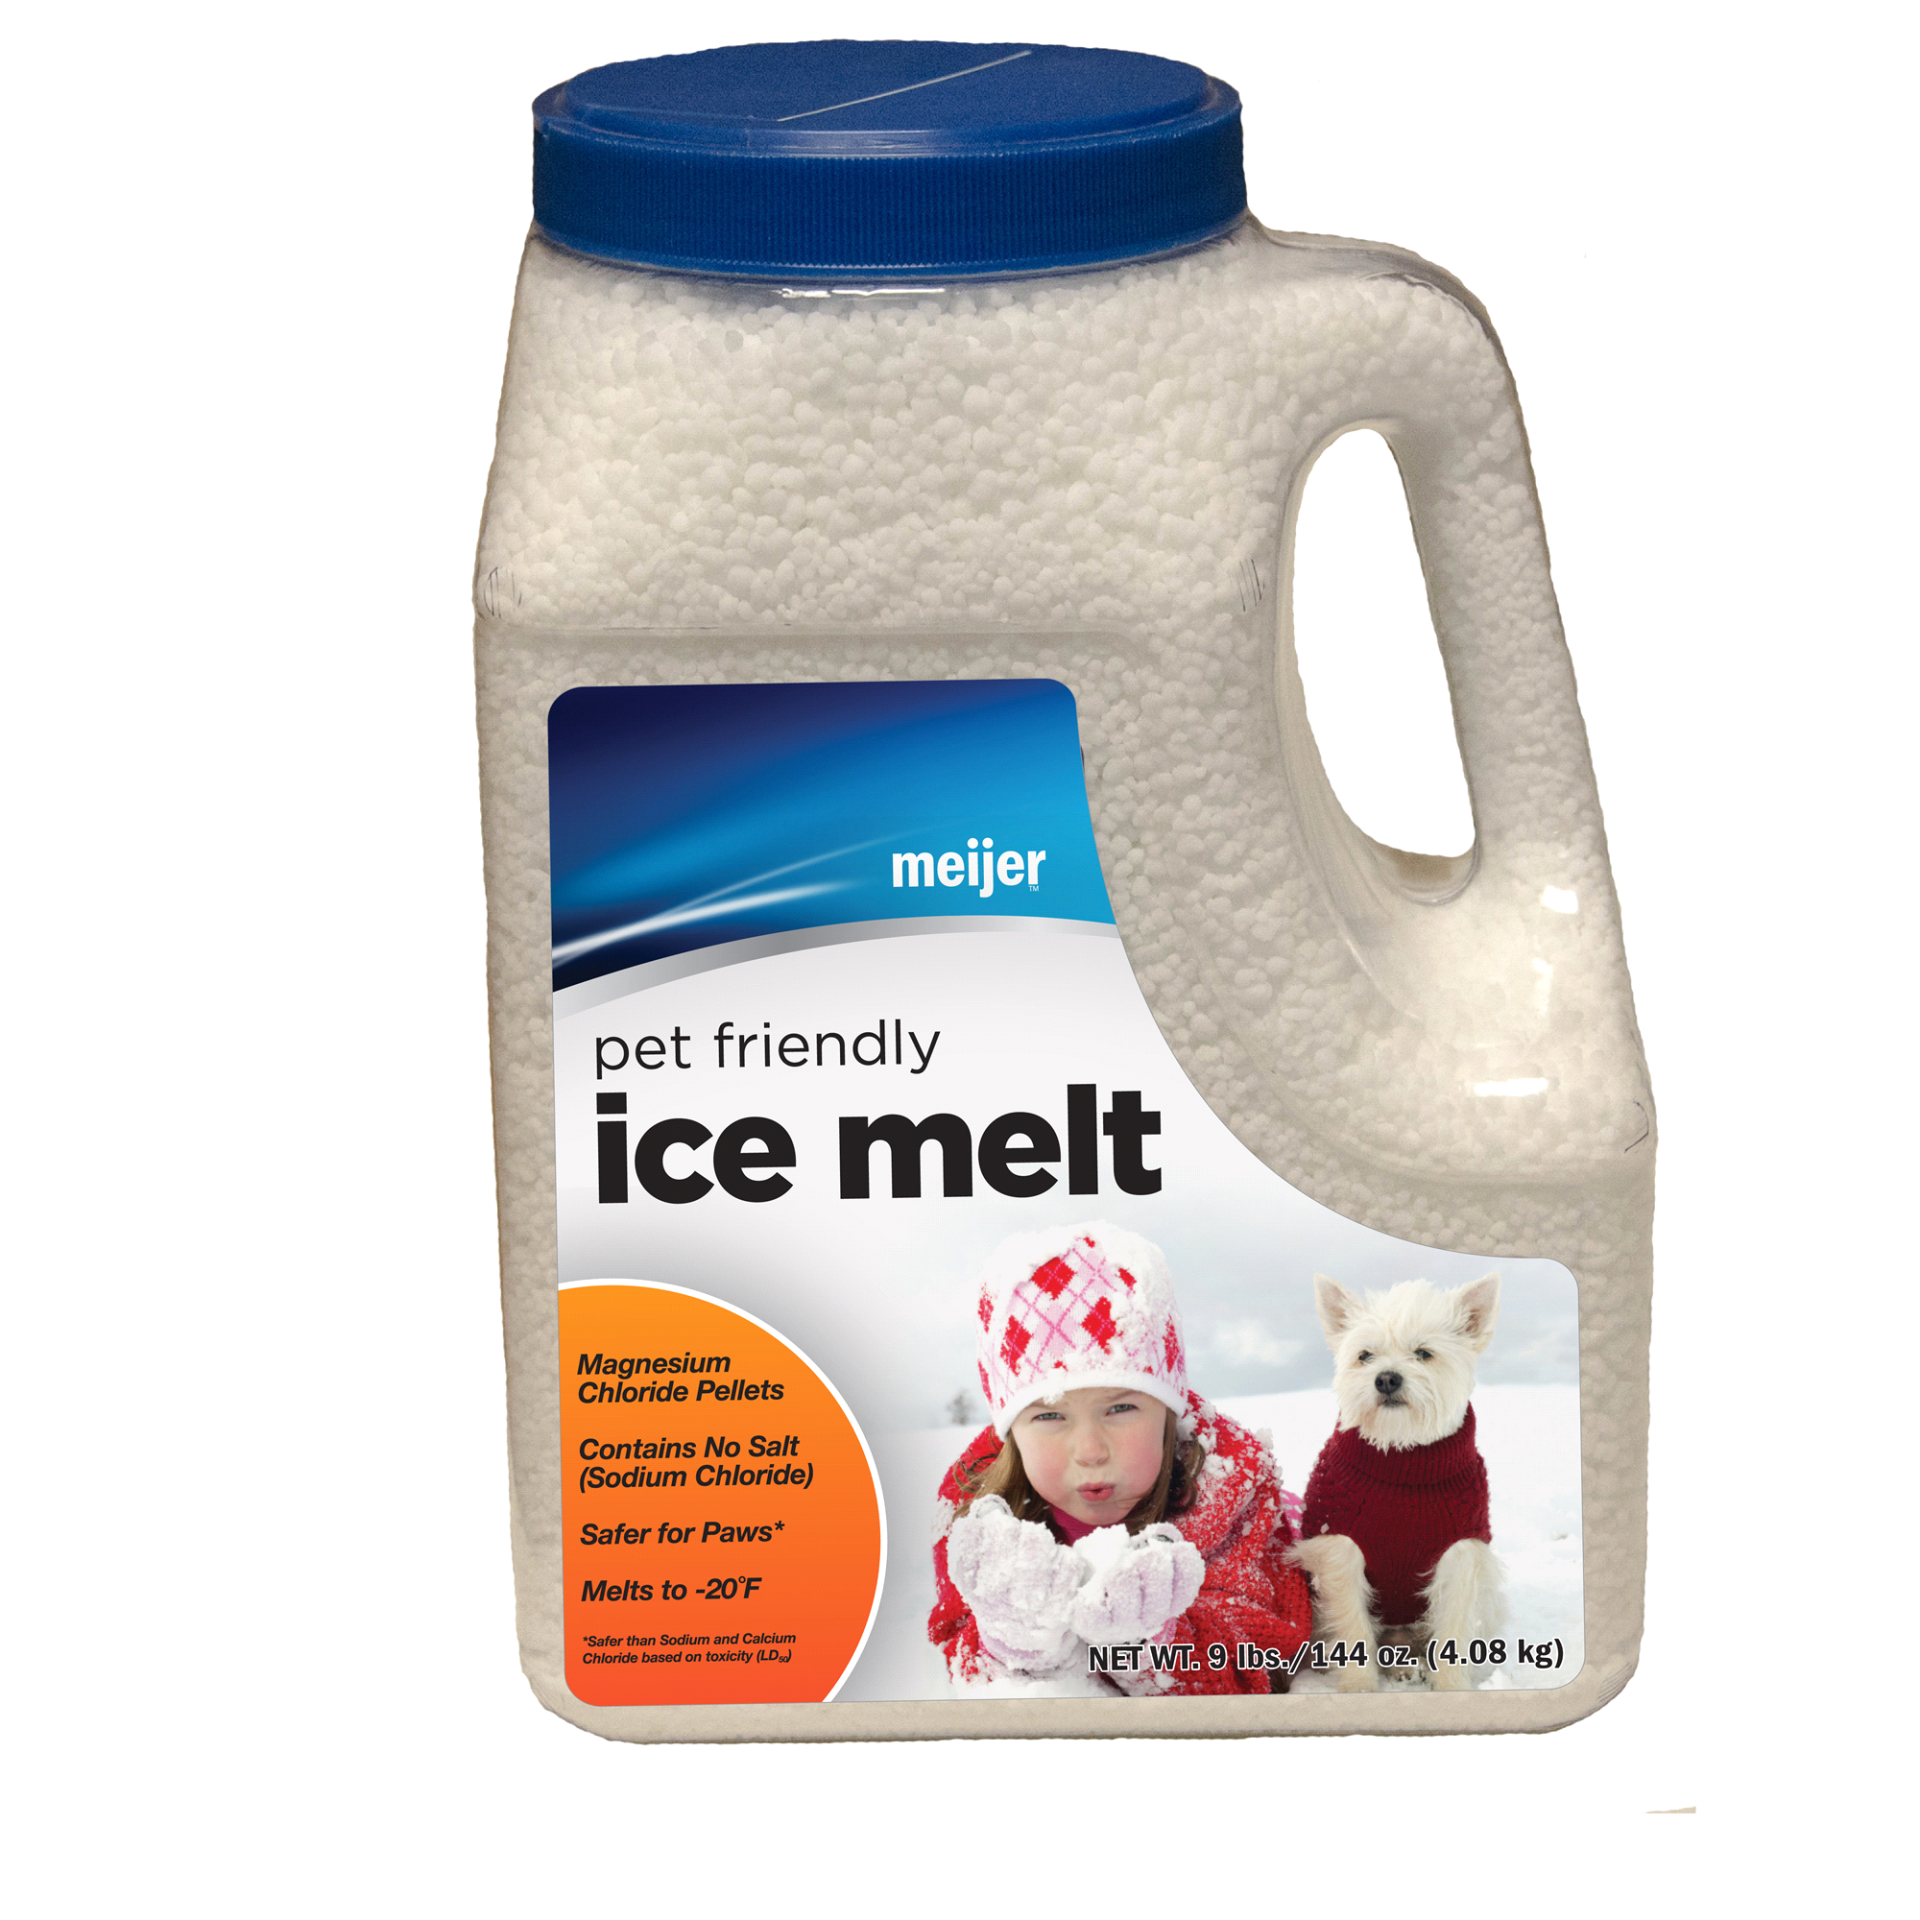 slide 1 of 1, Meijer Pet Friendly Ice Melt Jug, 9 lb